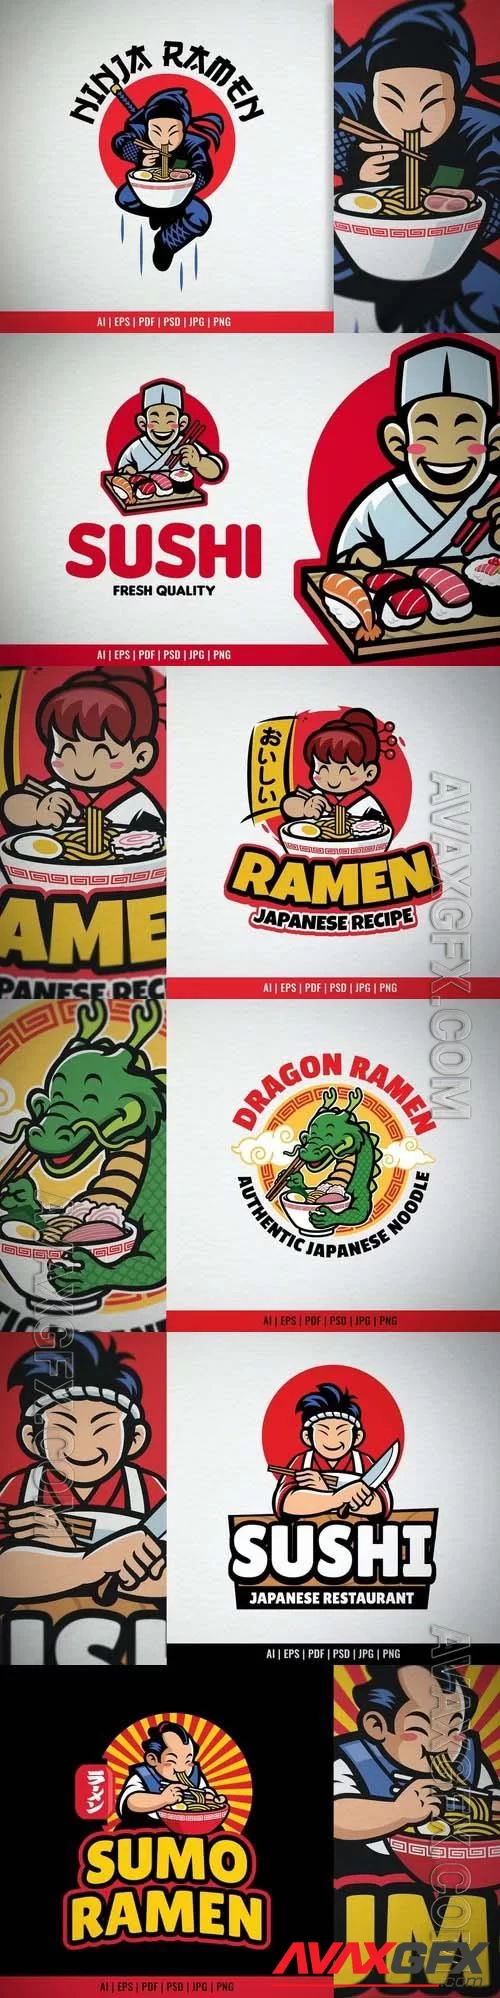 Cartoon sushi chef logo mascot, sumo ramen restaurant